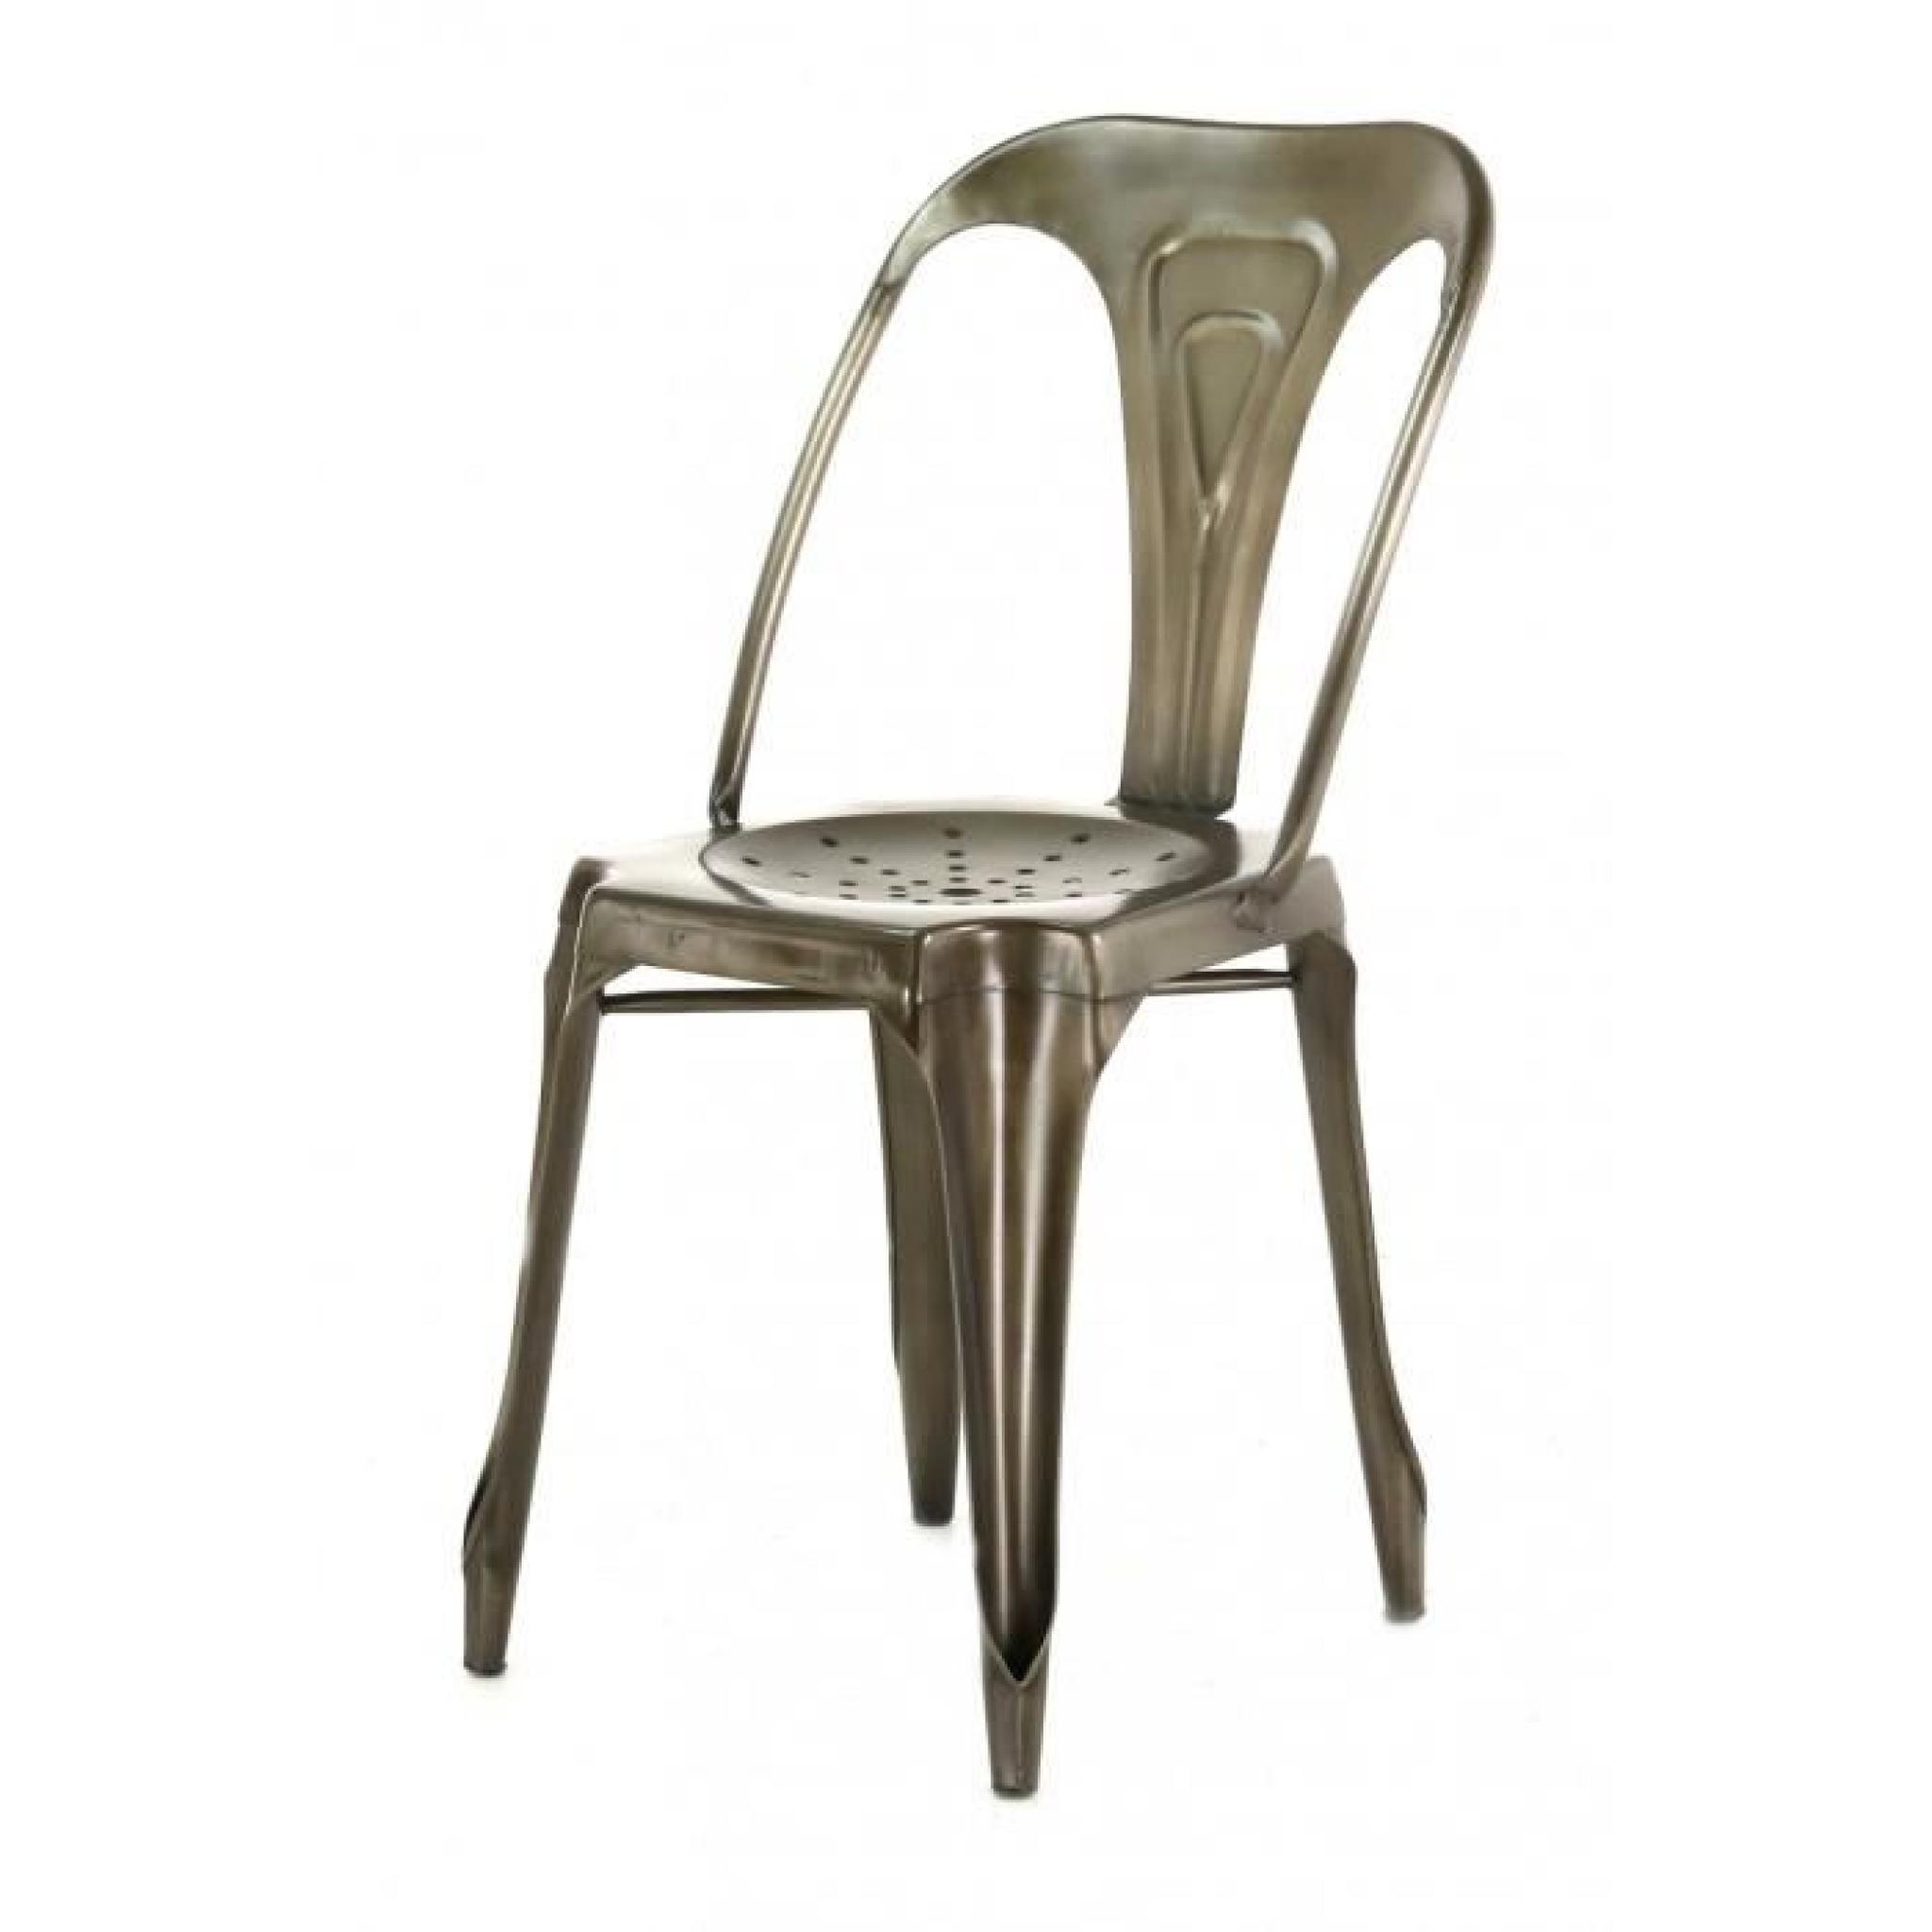 4x Chaise industrielle métal marron antique Indus - Inwood pas cher